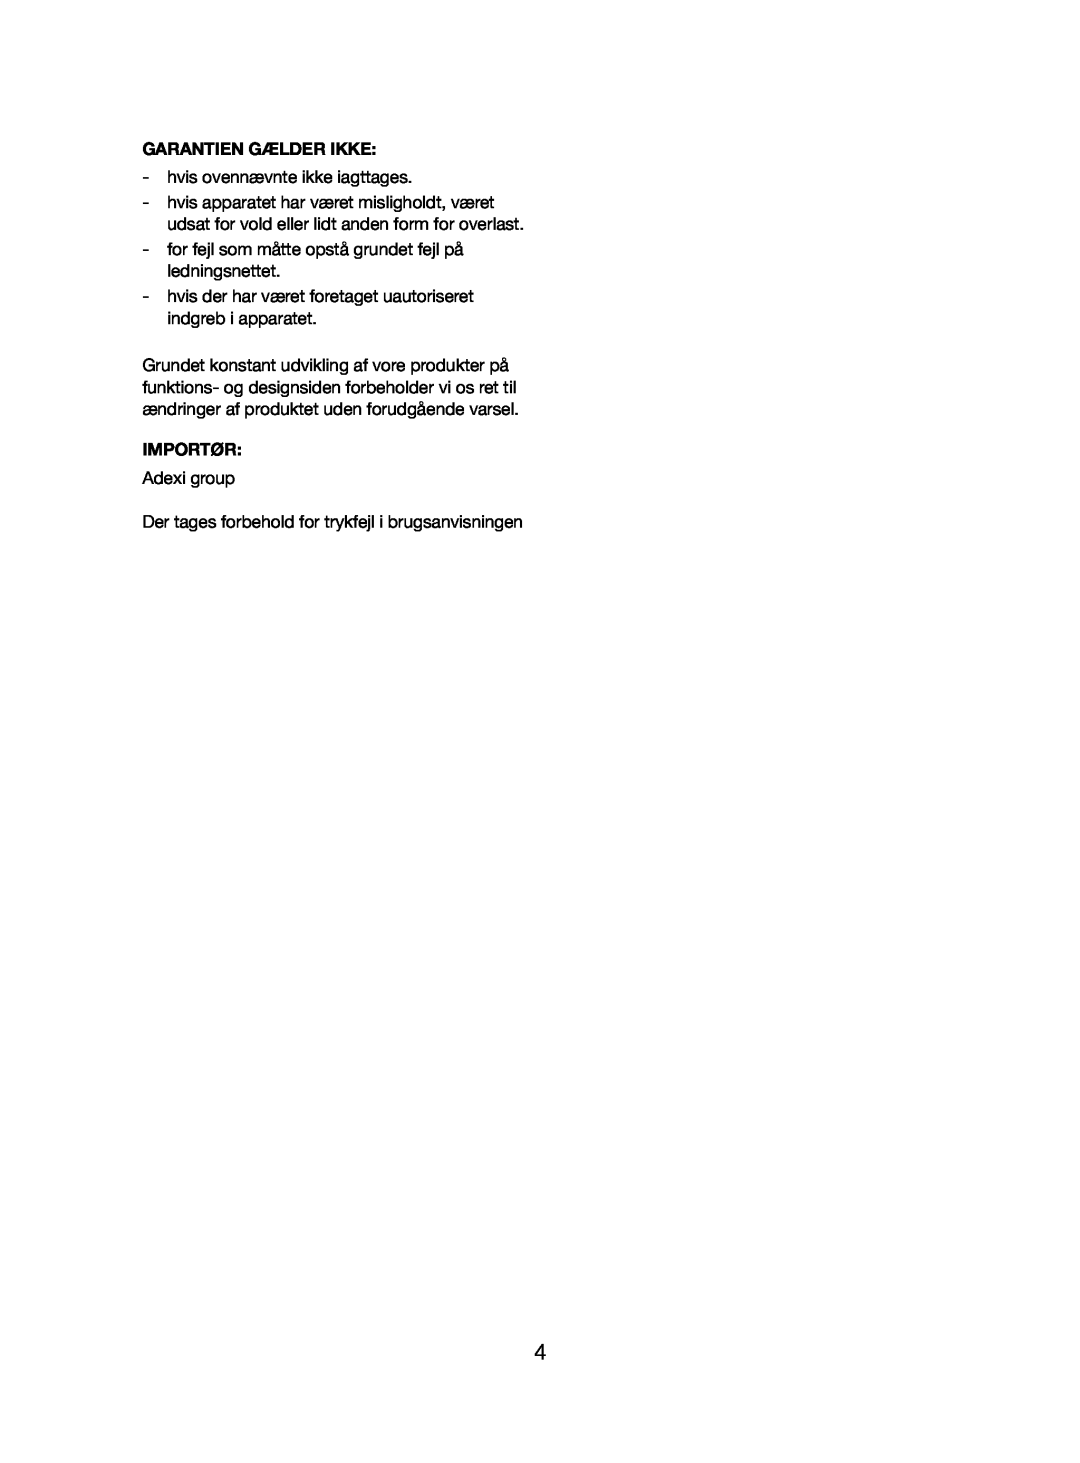 Melissa 245-060 manual Garantien Gælder Ikke, Importør 